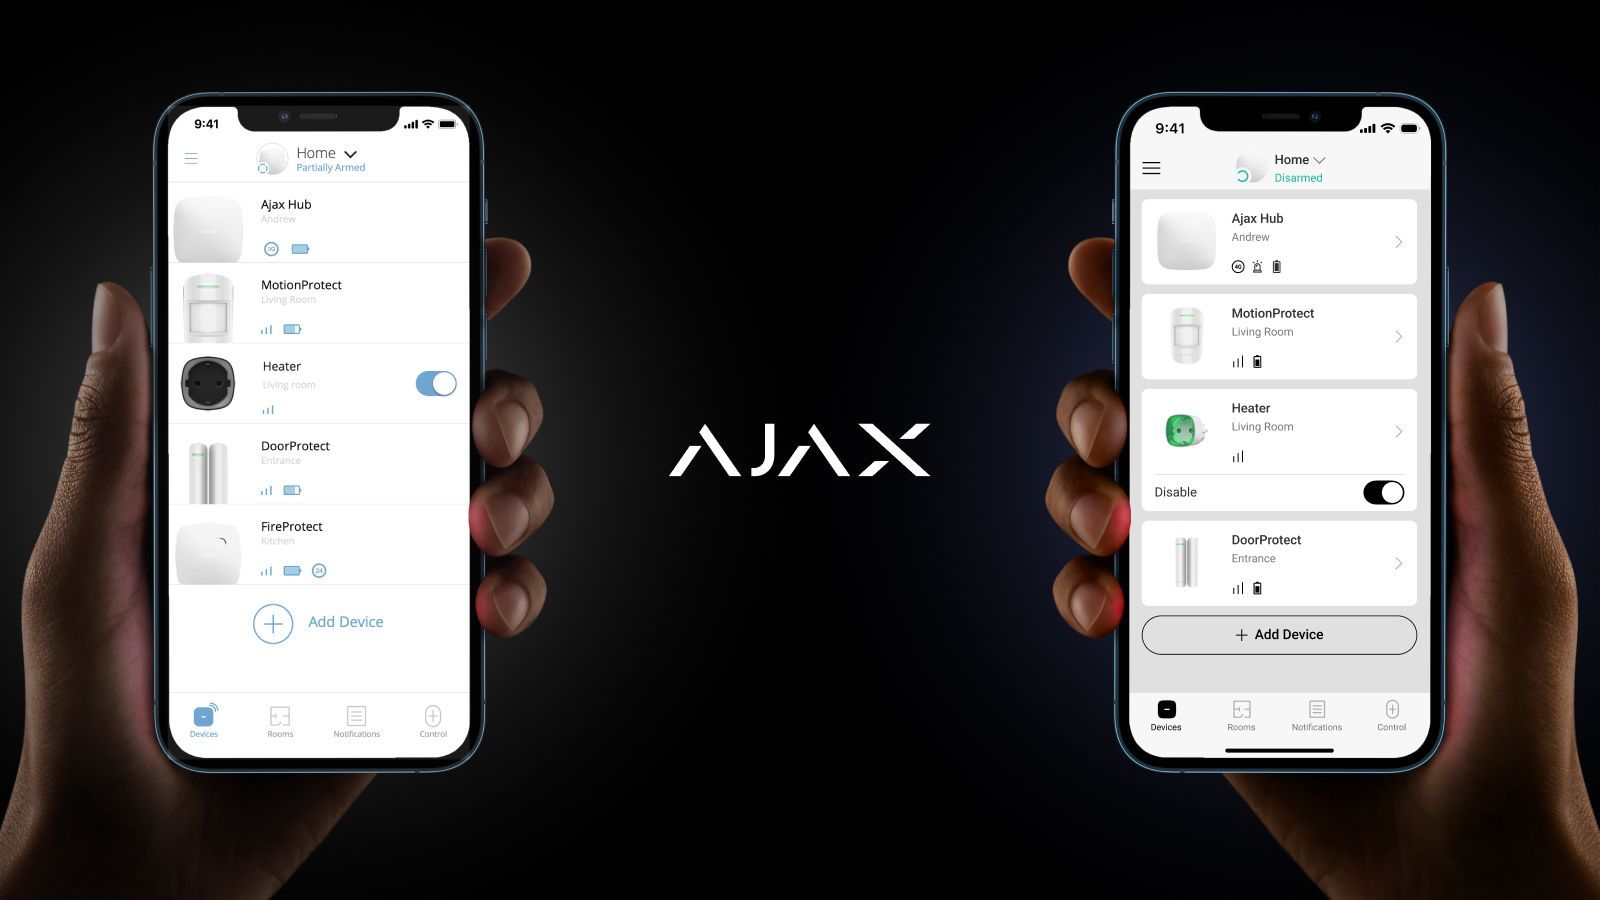 Vernieuwd ontwerp van de AJAX alarmsysteem applicatie voor Spanje